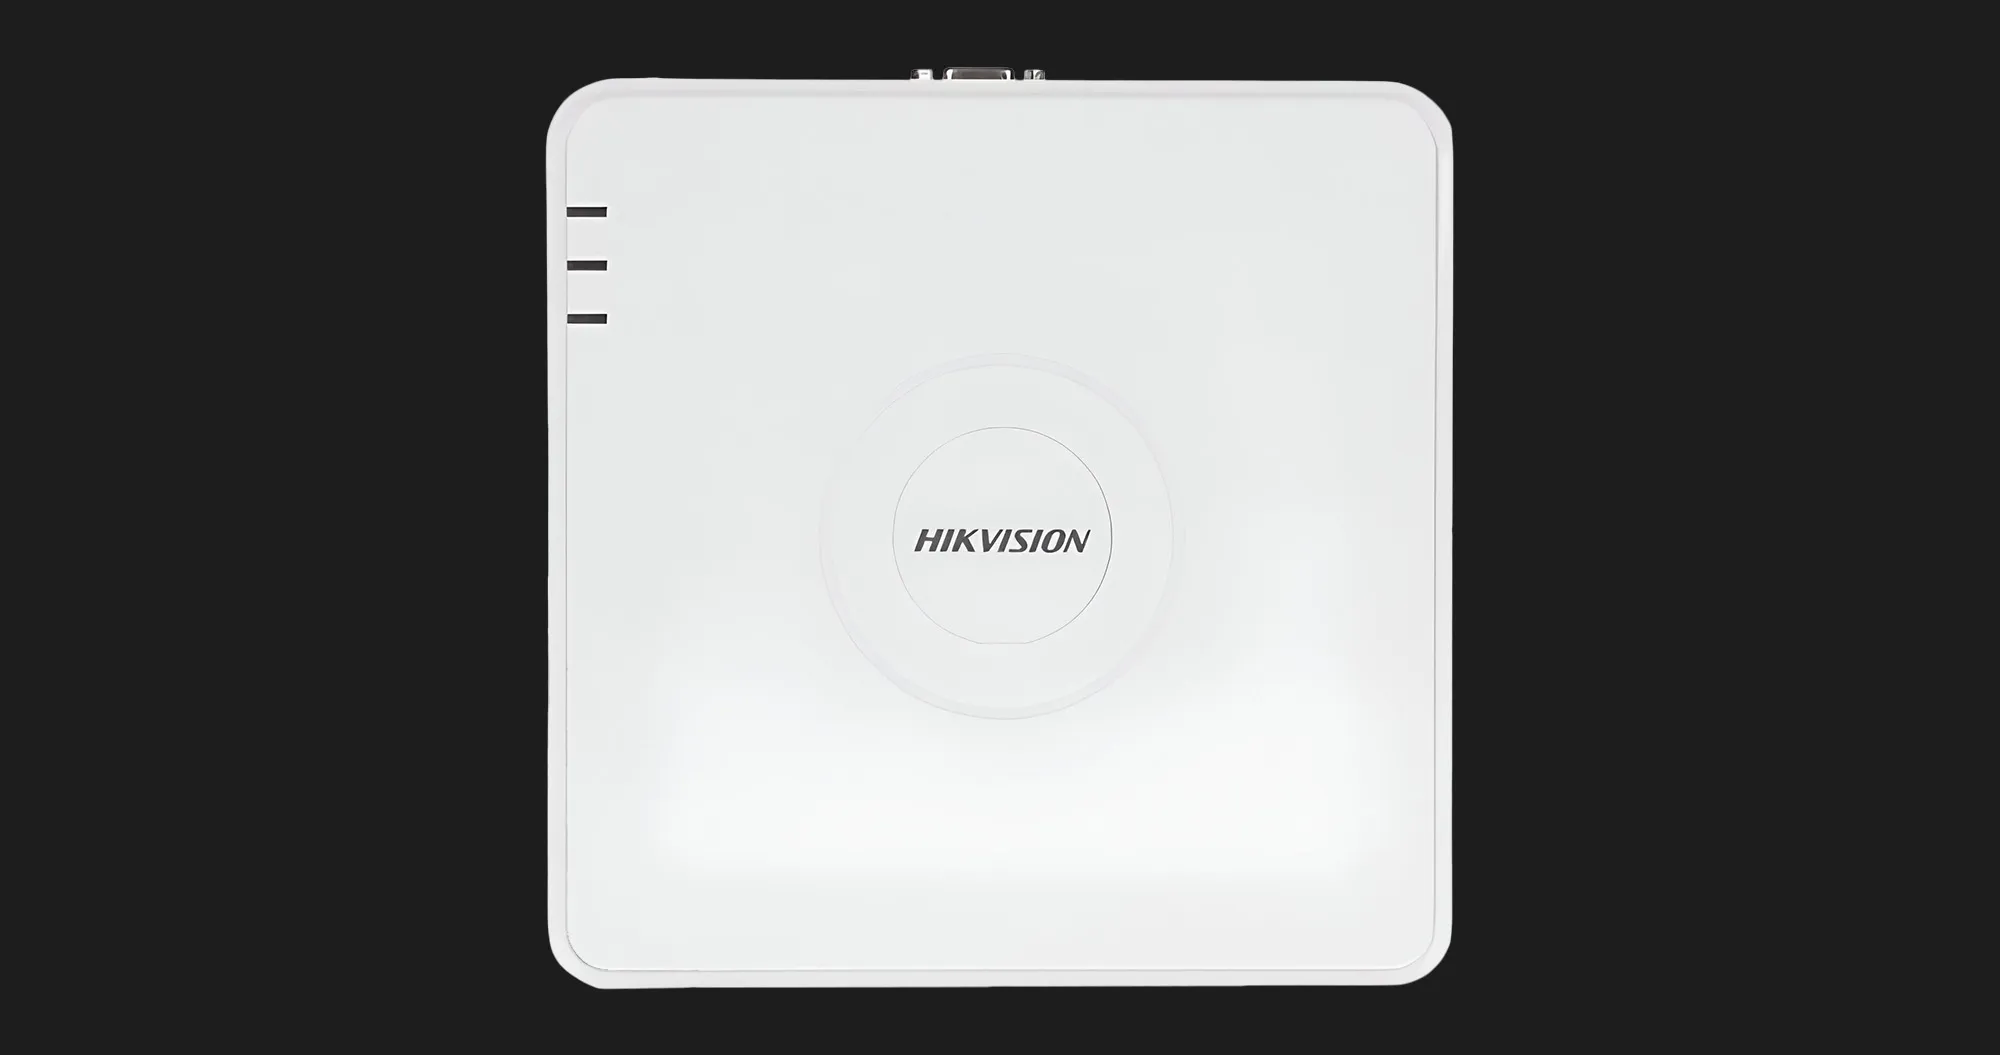 Видеорегистратор Hikvision DS-7108NI-Q1/8P (C) (White)